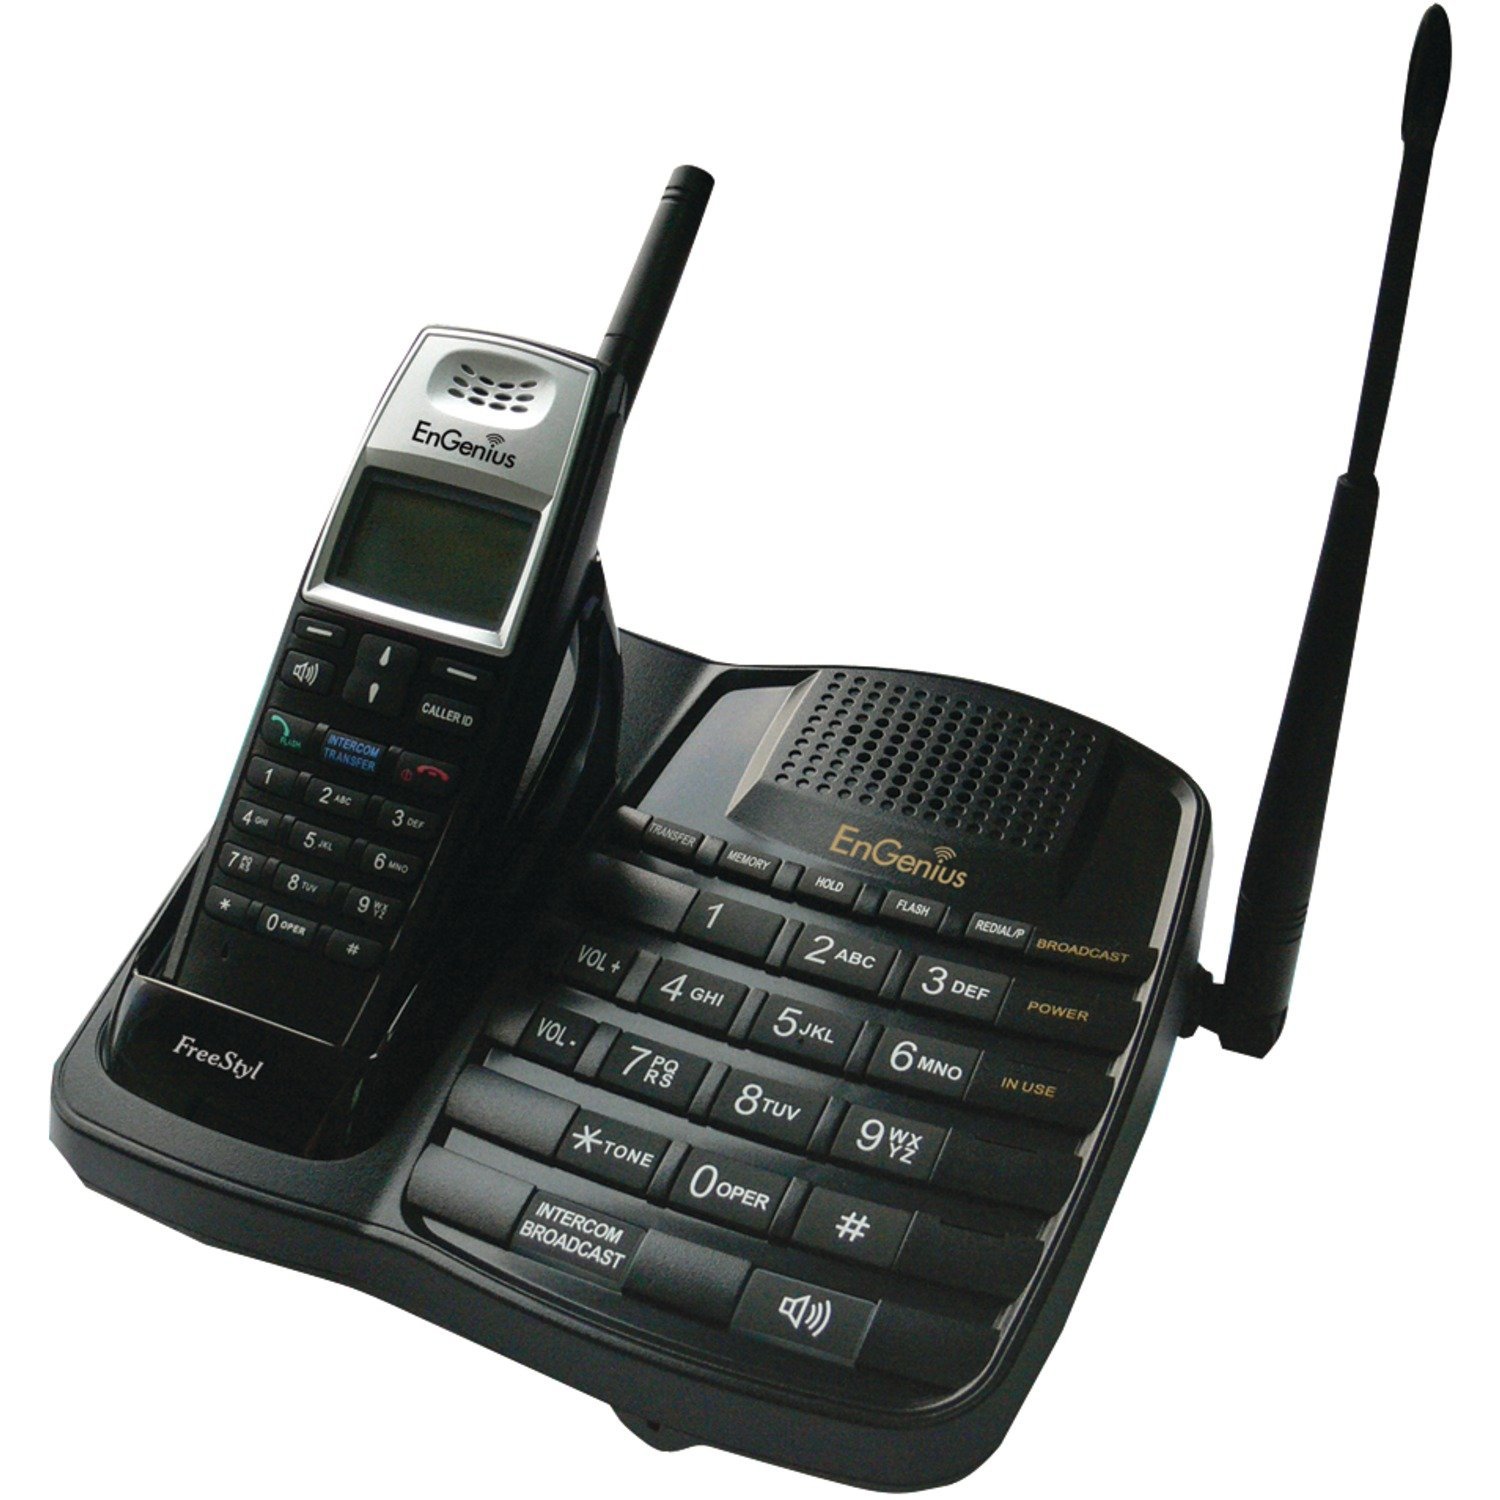 EnGenius FreeStyl1 エクストリームレンジ スケーラブル コードレス電話システム (ハンドセット 1 台、双方向インターコム付き)